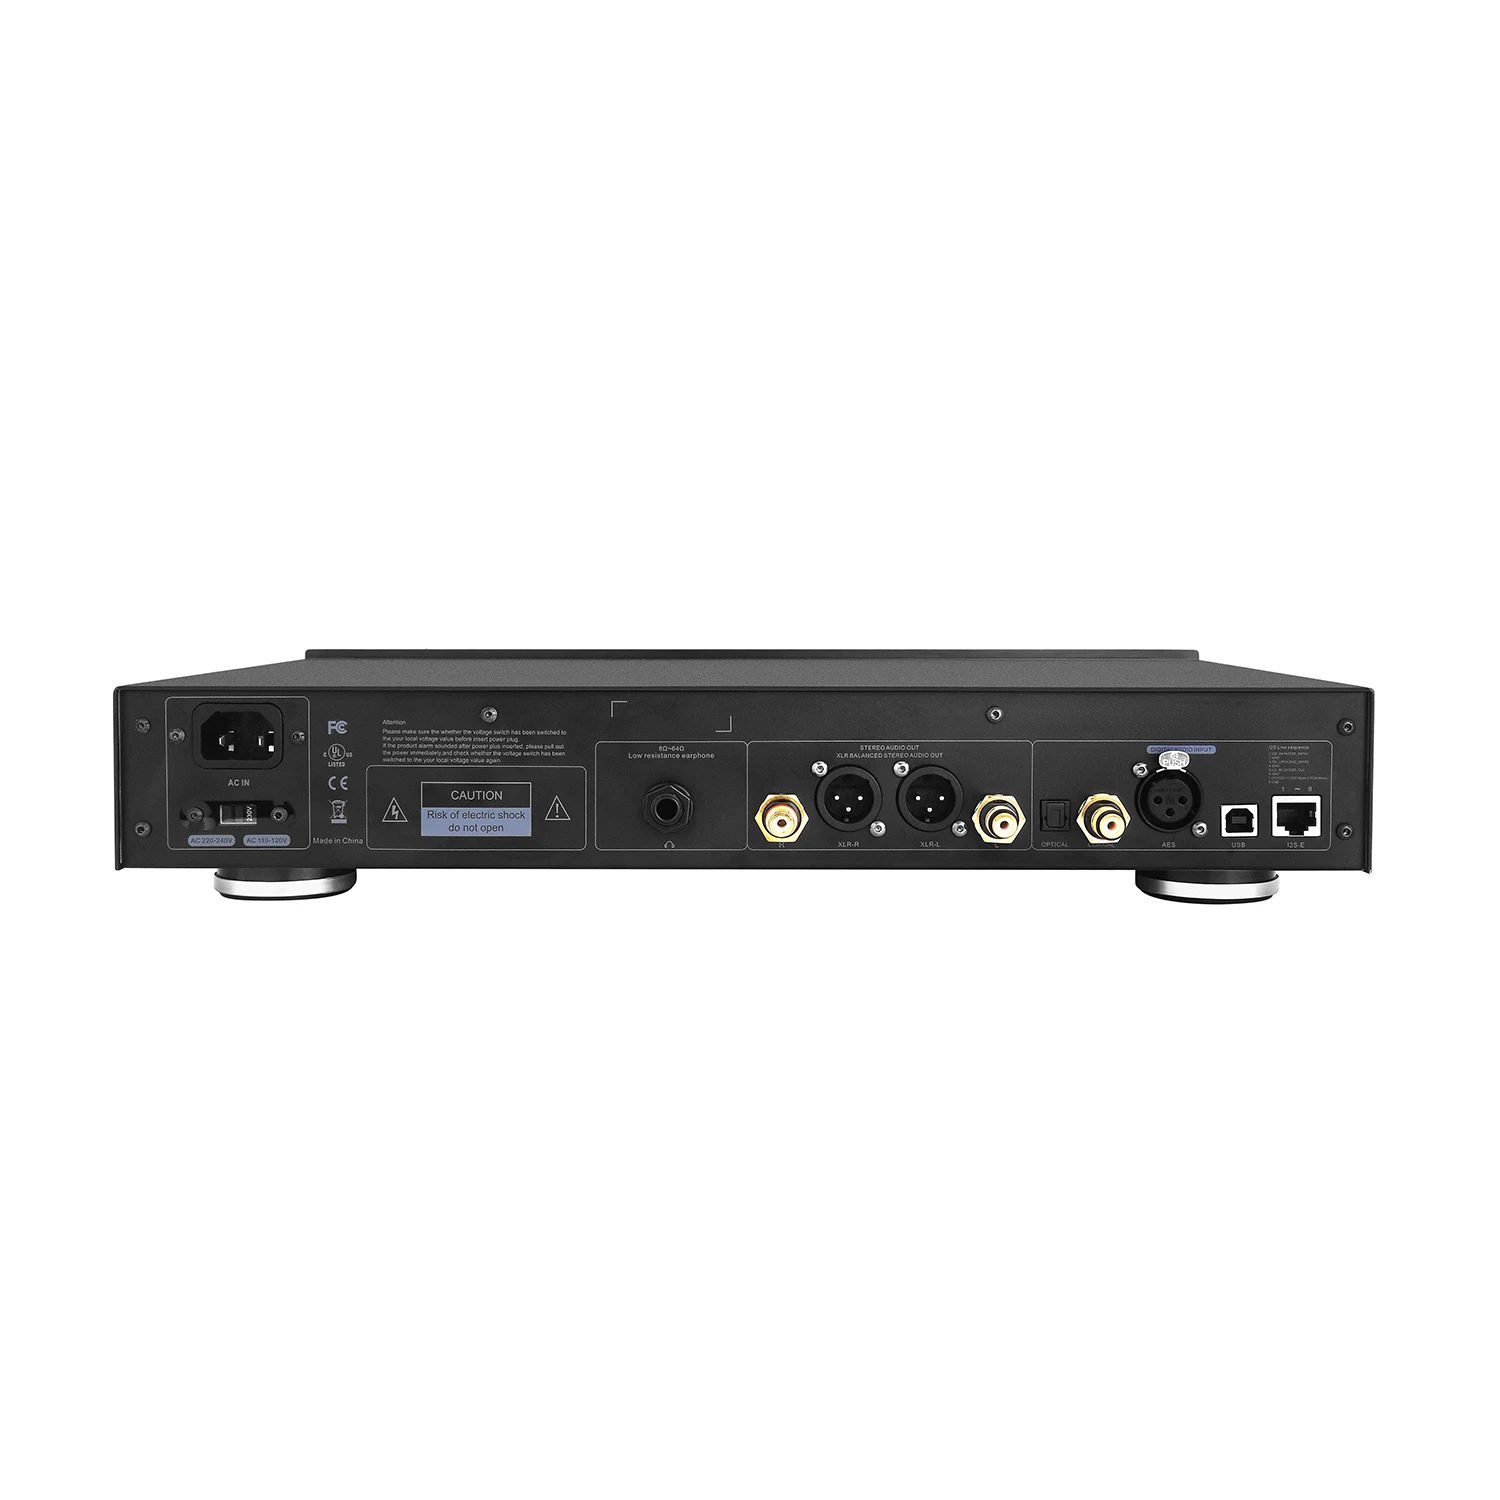 

Eweat D20 Hi-End аудио декодер ESS9038 pro DAC флагманский чип цифро-аналоговый аудио преобразователь